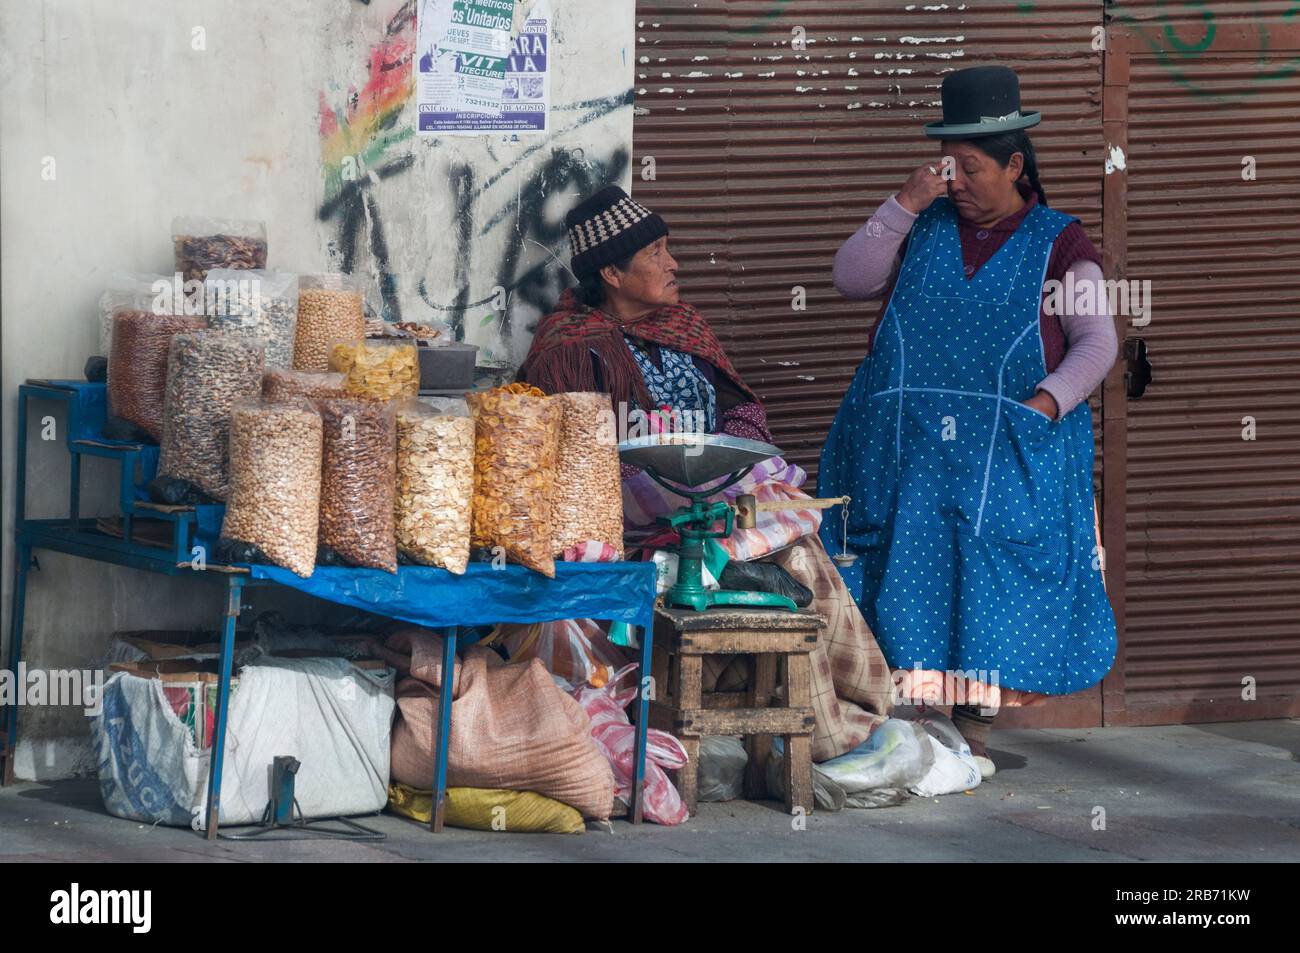 Weibliche Straßenverkäufer in der Calle Ilampu-Gegend von La Paz, der bolivianischen Hauptstadt Stockfoto